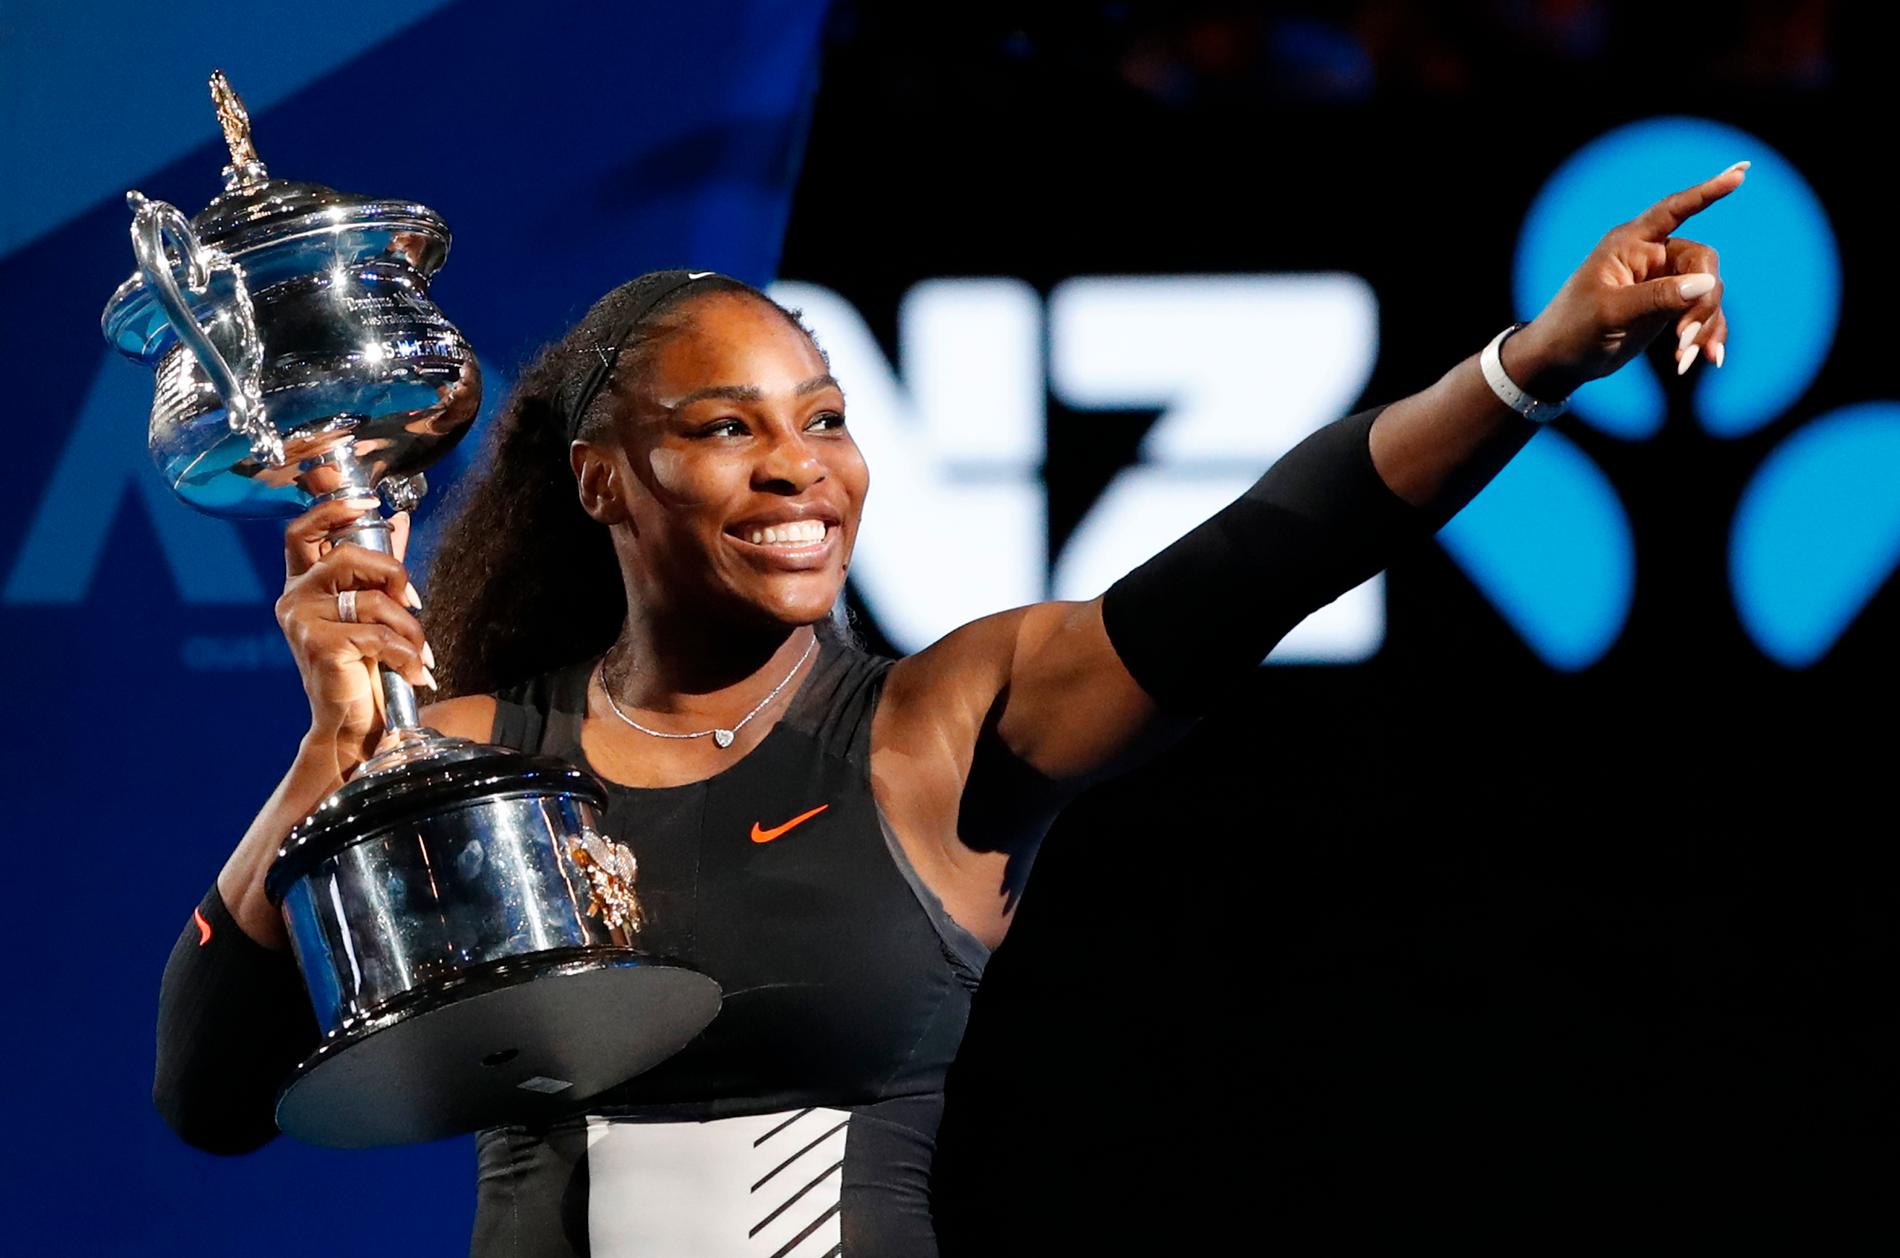 Trots systrarna Serena och Venus Williams legendariska status utsätts de för strukturell orättvisa. 